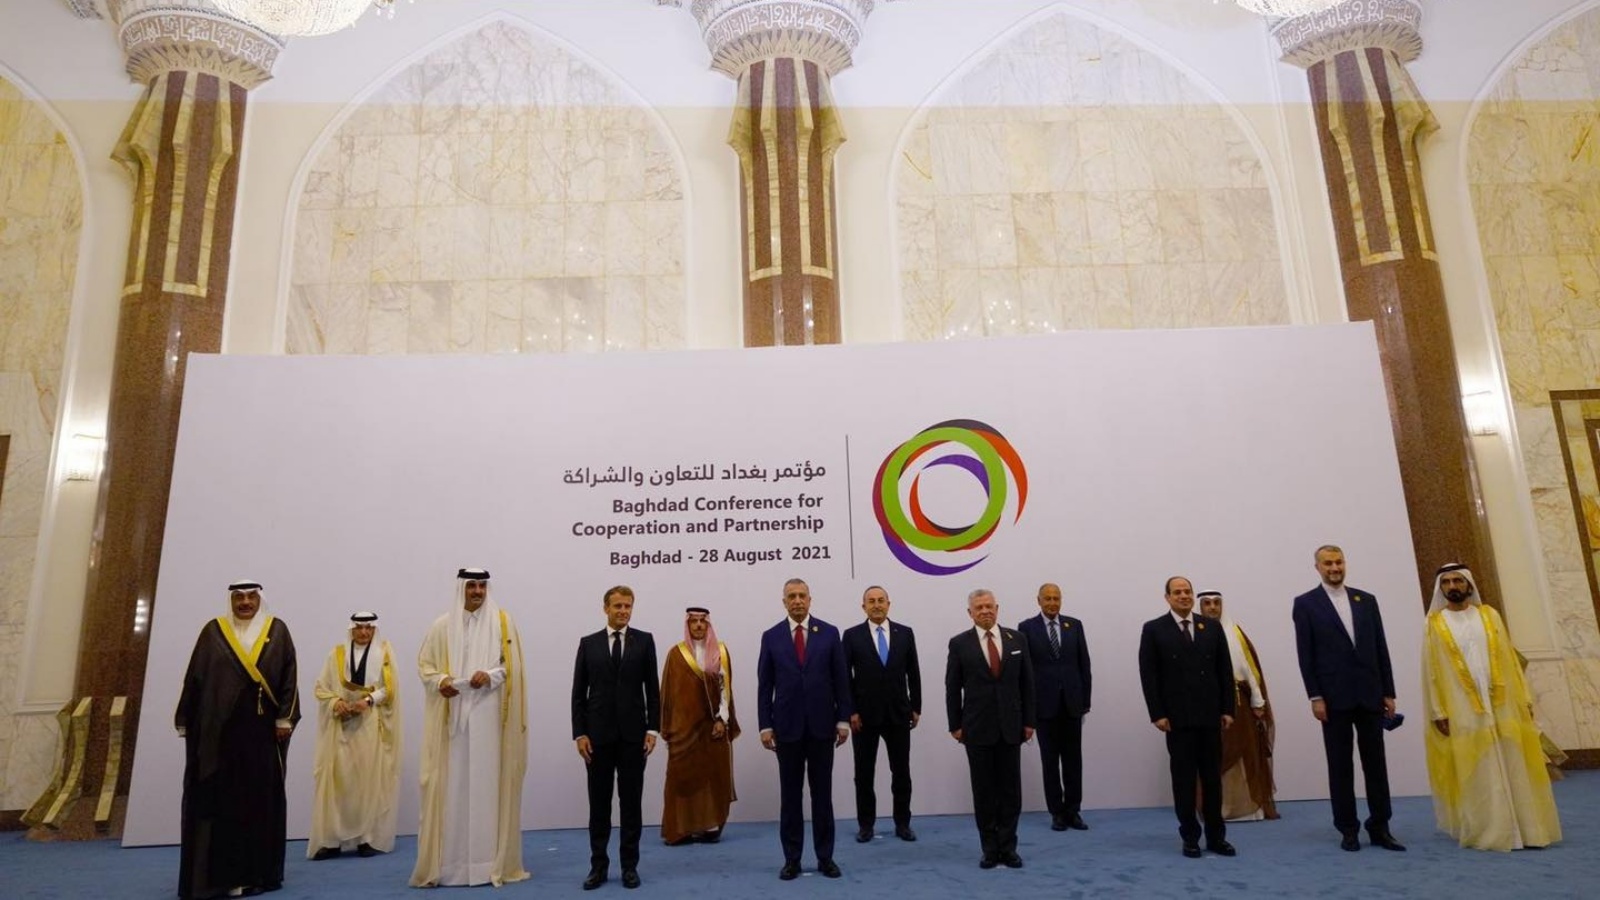 رؤساء وفود الدول المشاركة في مؤتمر بغداد الأول للتعاون والشراكة في 28 أغسطس 2021 (رسمي)